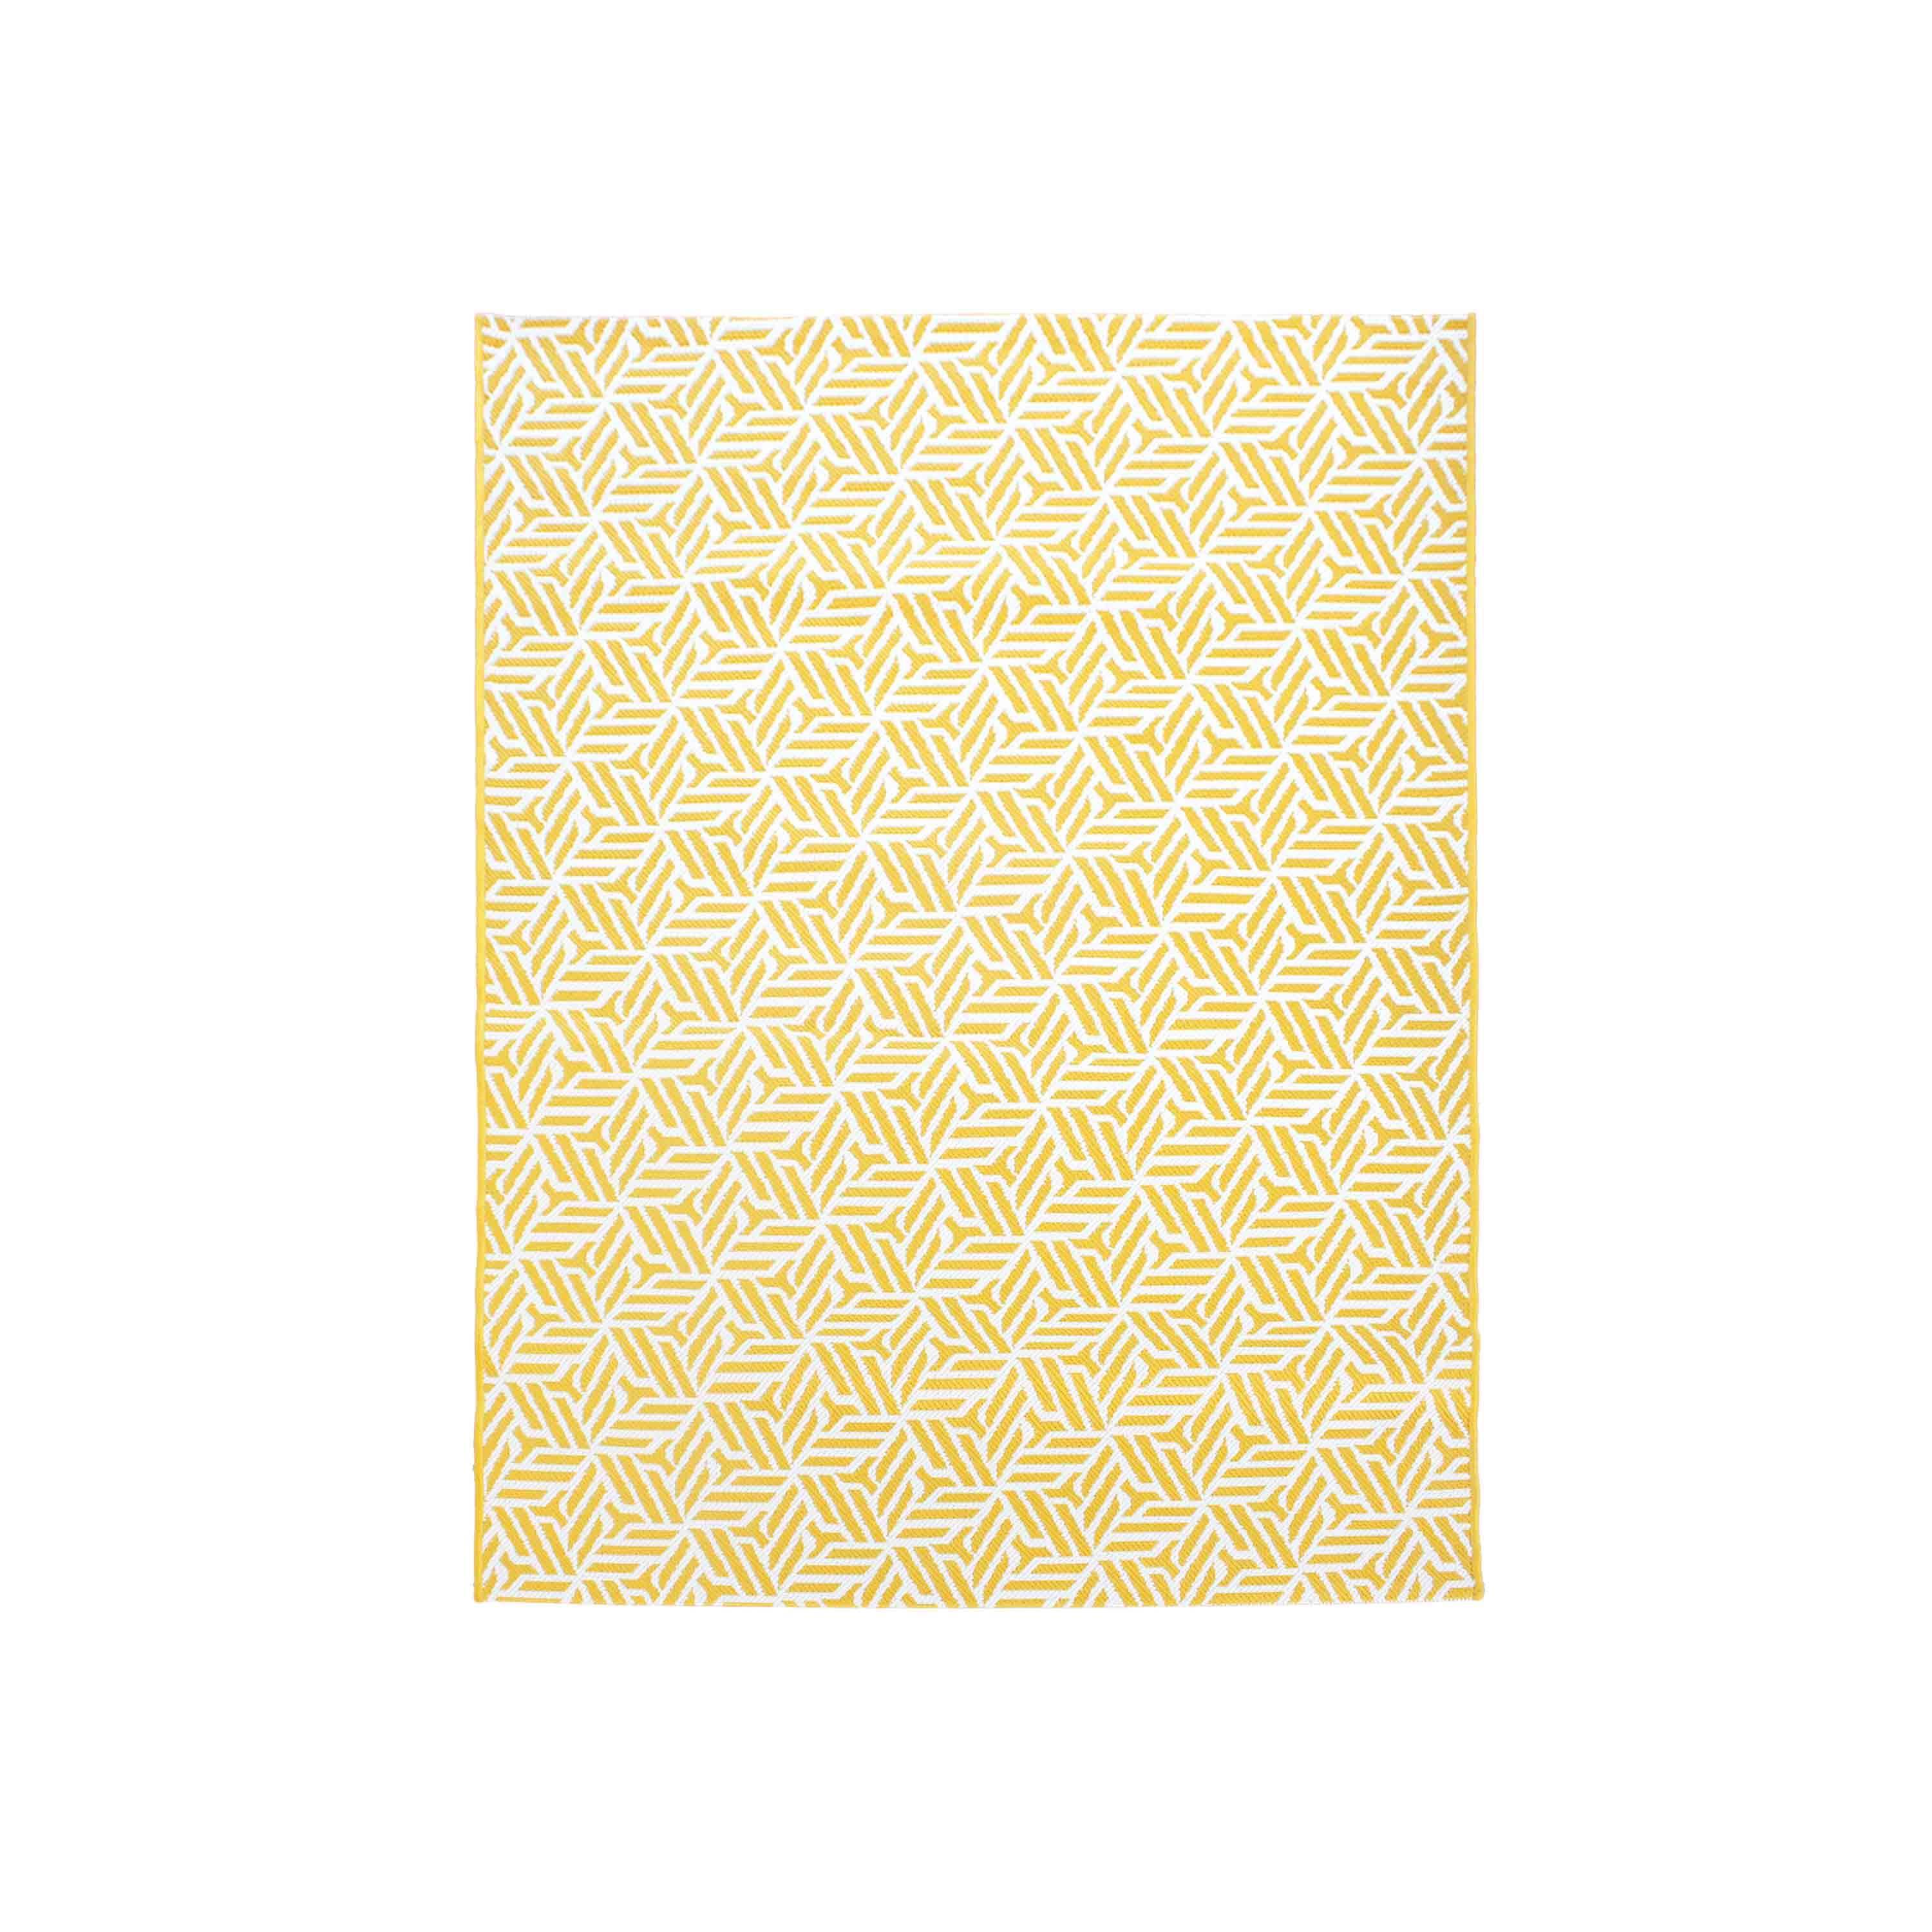 Tapis extérieur/intérieur 160 x 230 cm, jaune et blanc, densité 1,15 kg/m2, motif losanges, traité anti UV, toutes saisons Photo1